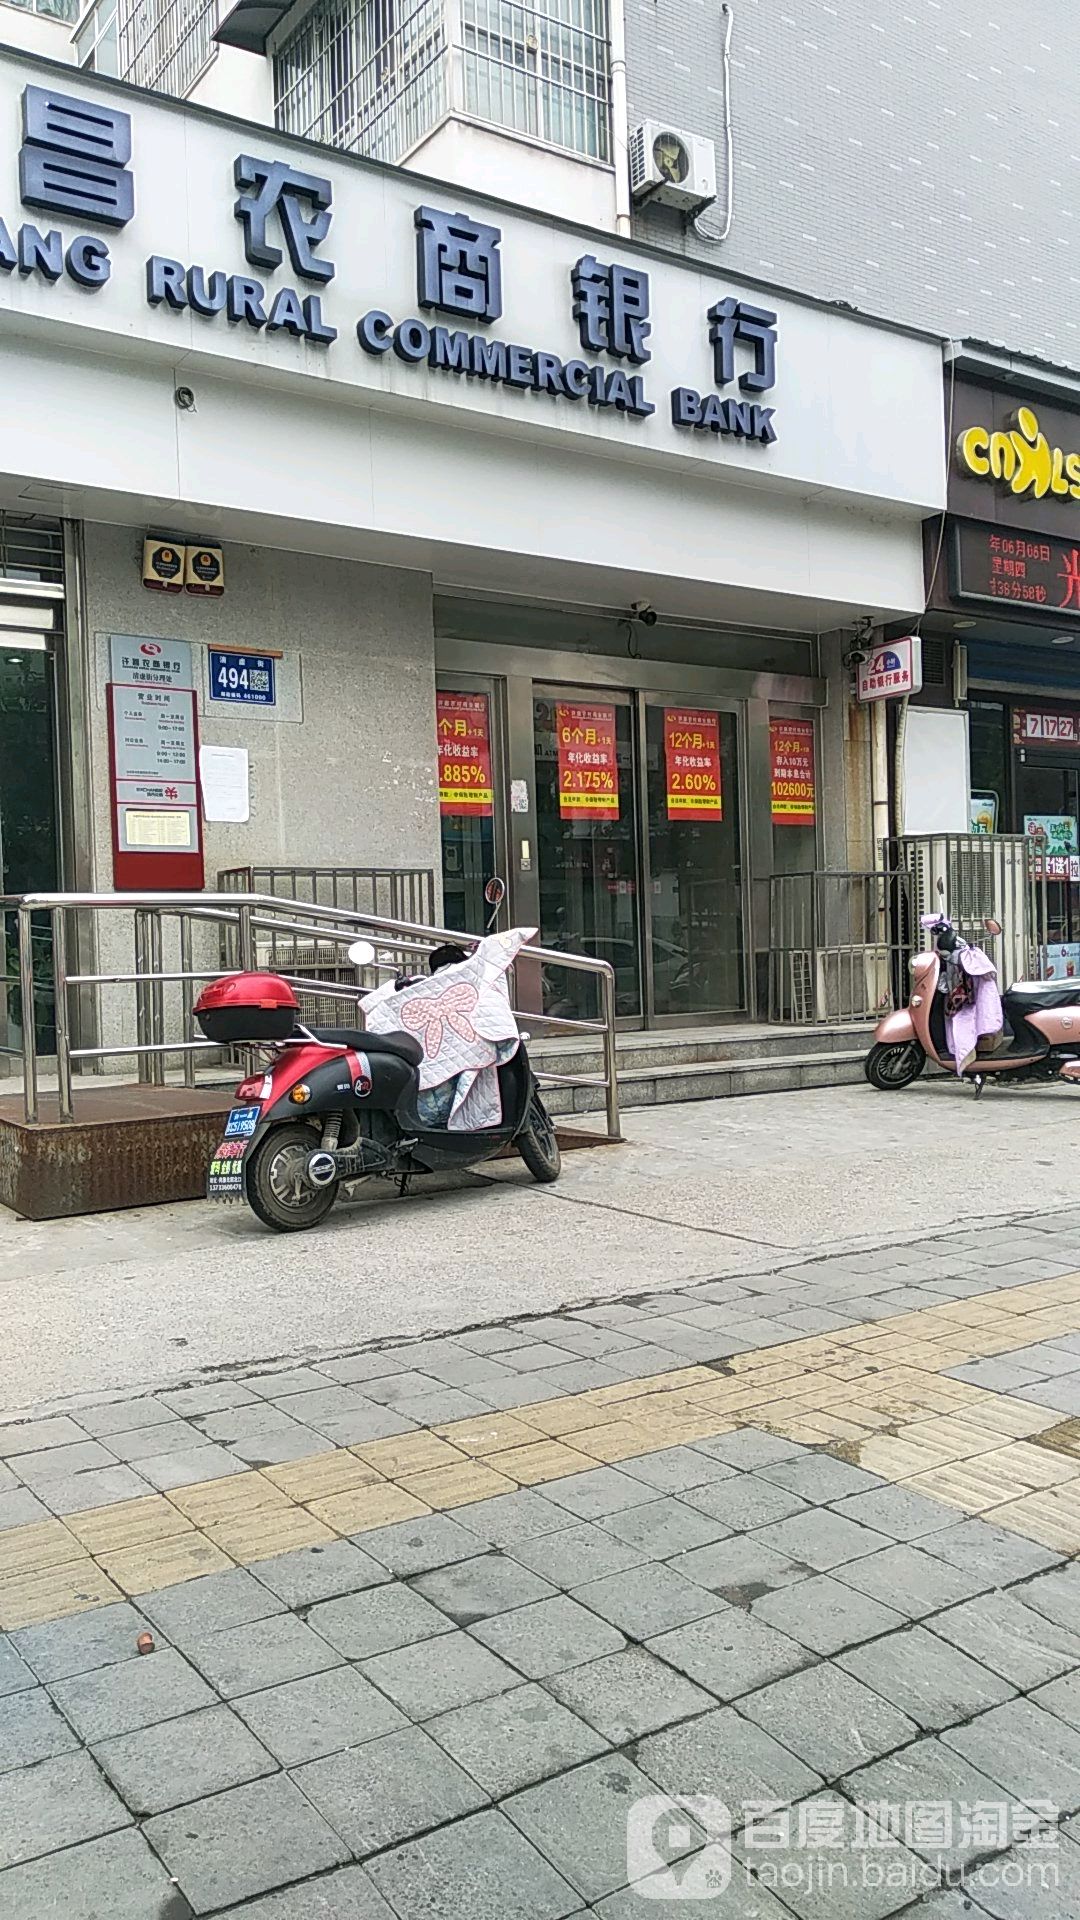 許昌魏都農村商業銀行ATM